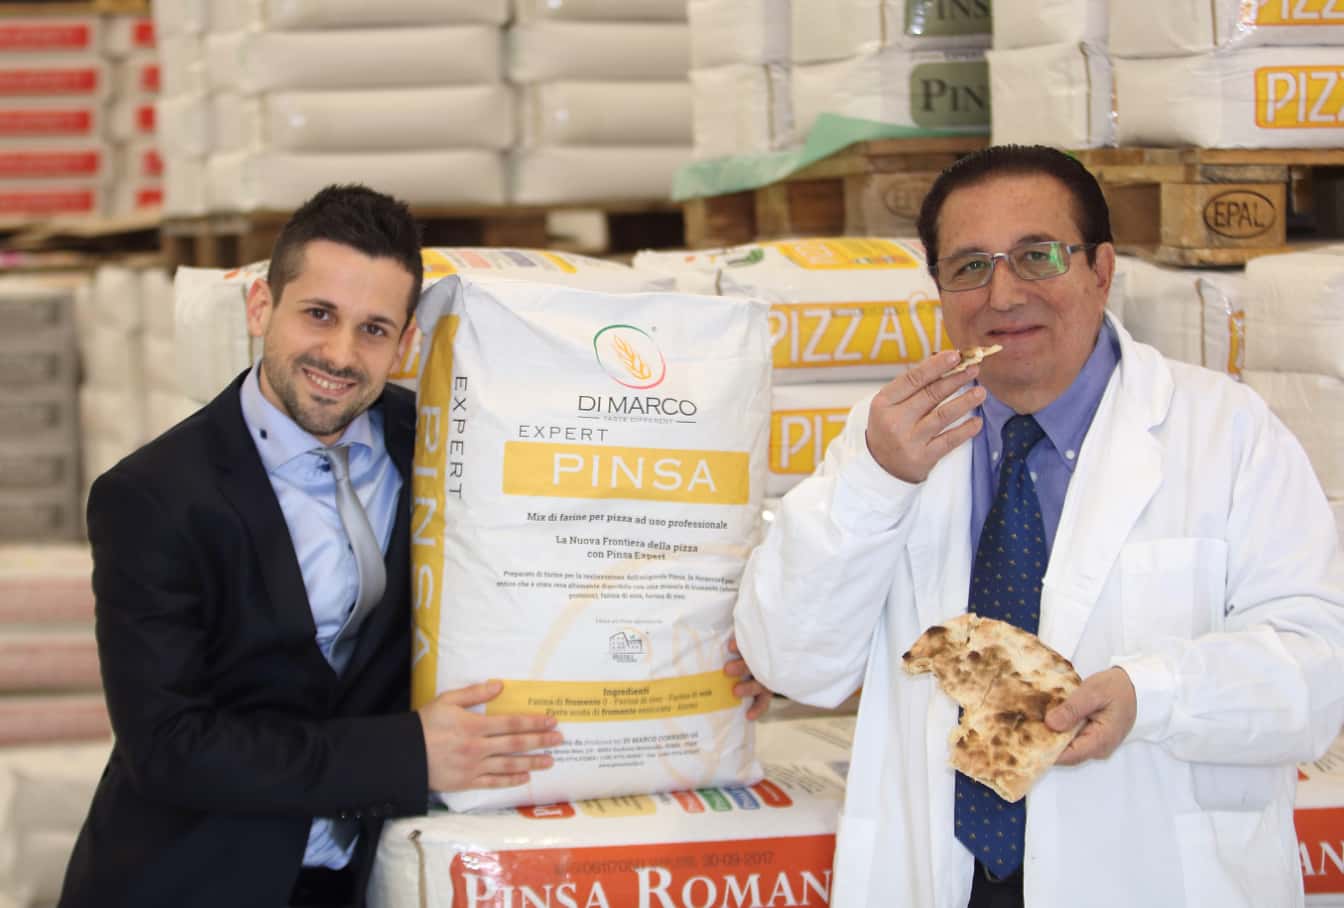 Foto di Corrado Di Marco mentre assaggia un impasto di Pinsa e di un altro membro dello staff con dei sacchi di farina alle loro spalle.